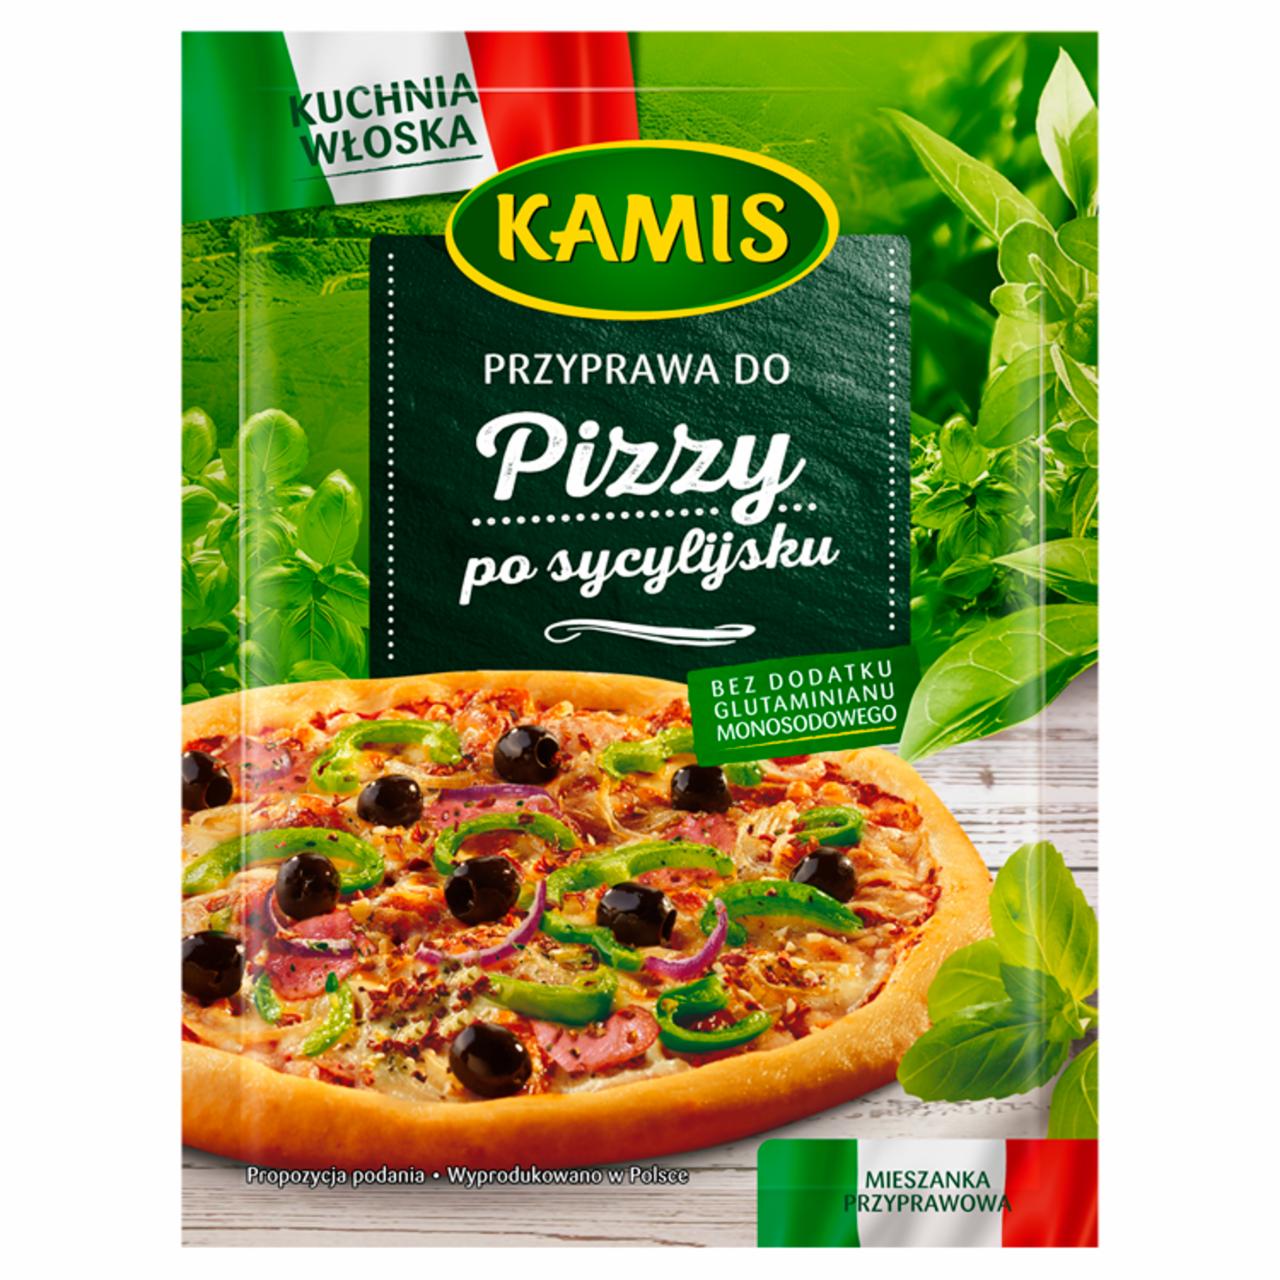 Zdjęcia - Kamis Kuchnia Włoska Przyprawa do pizzy po sycylijsku Mieszanka przyprawowa 15 g